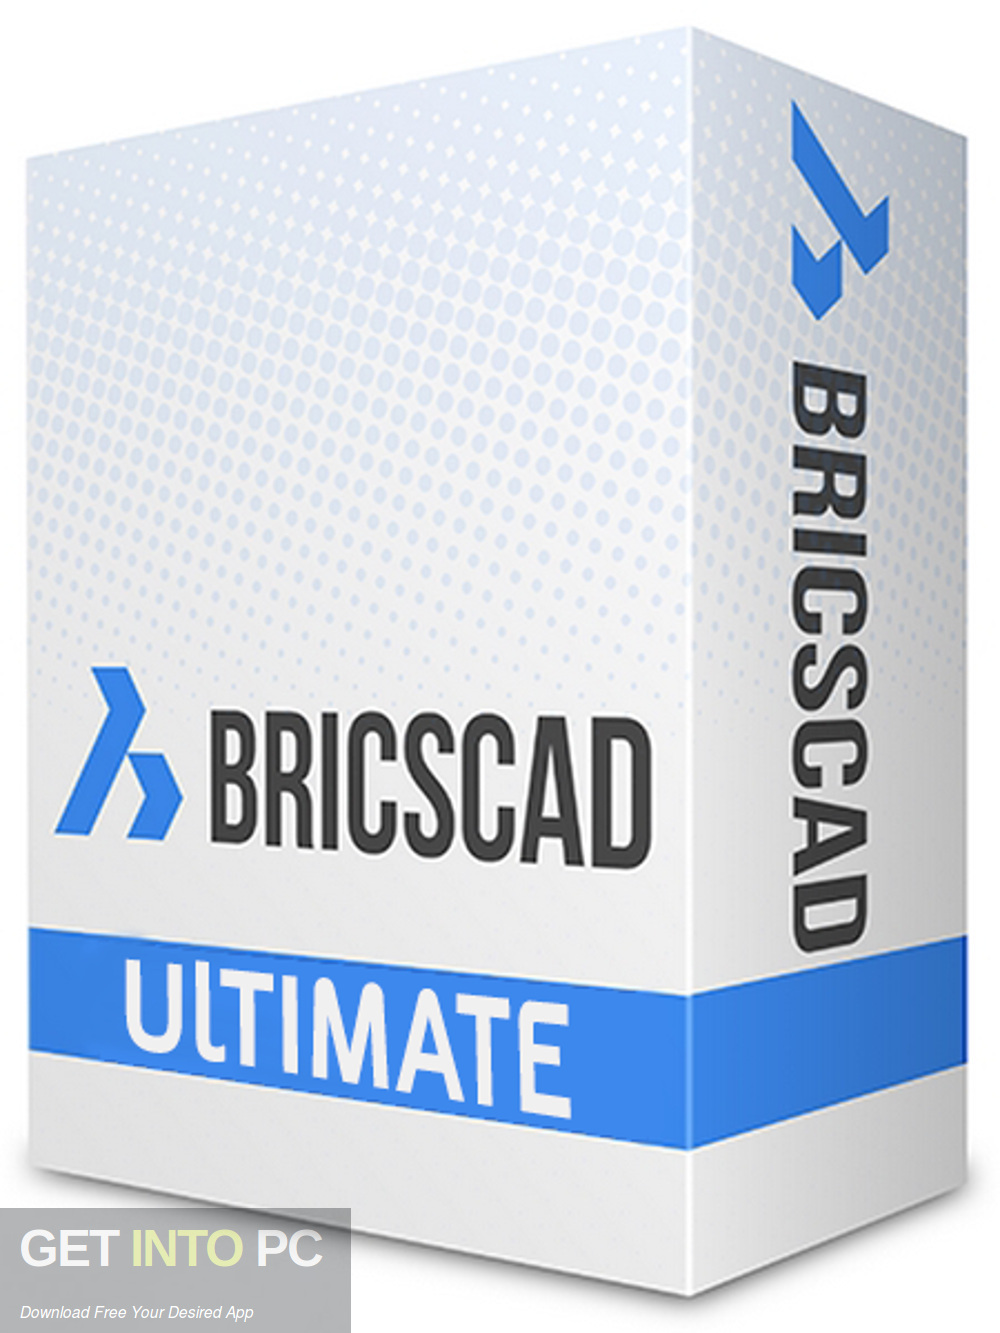 bricscad free download mac